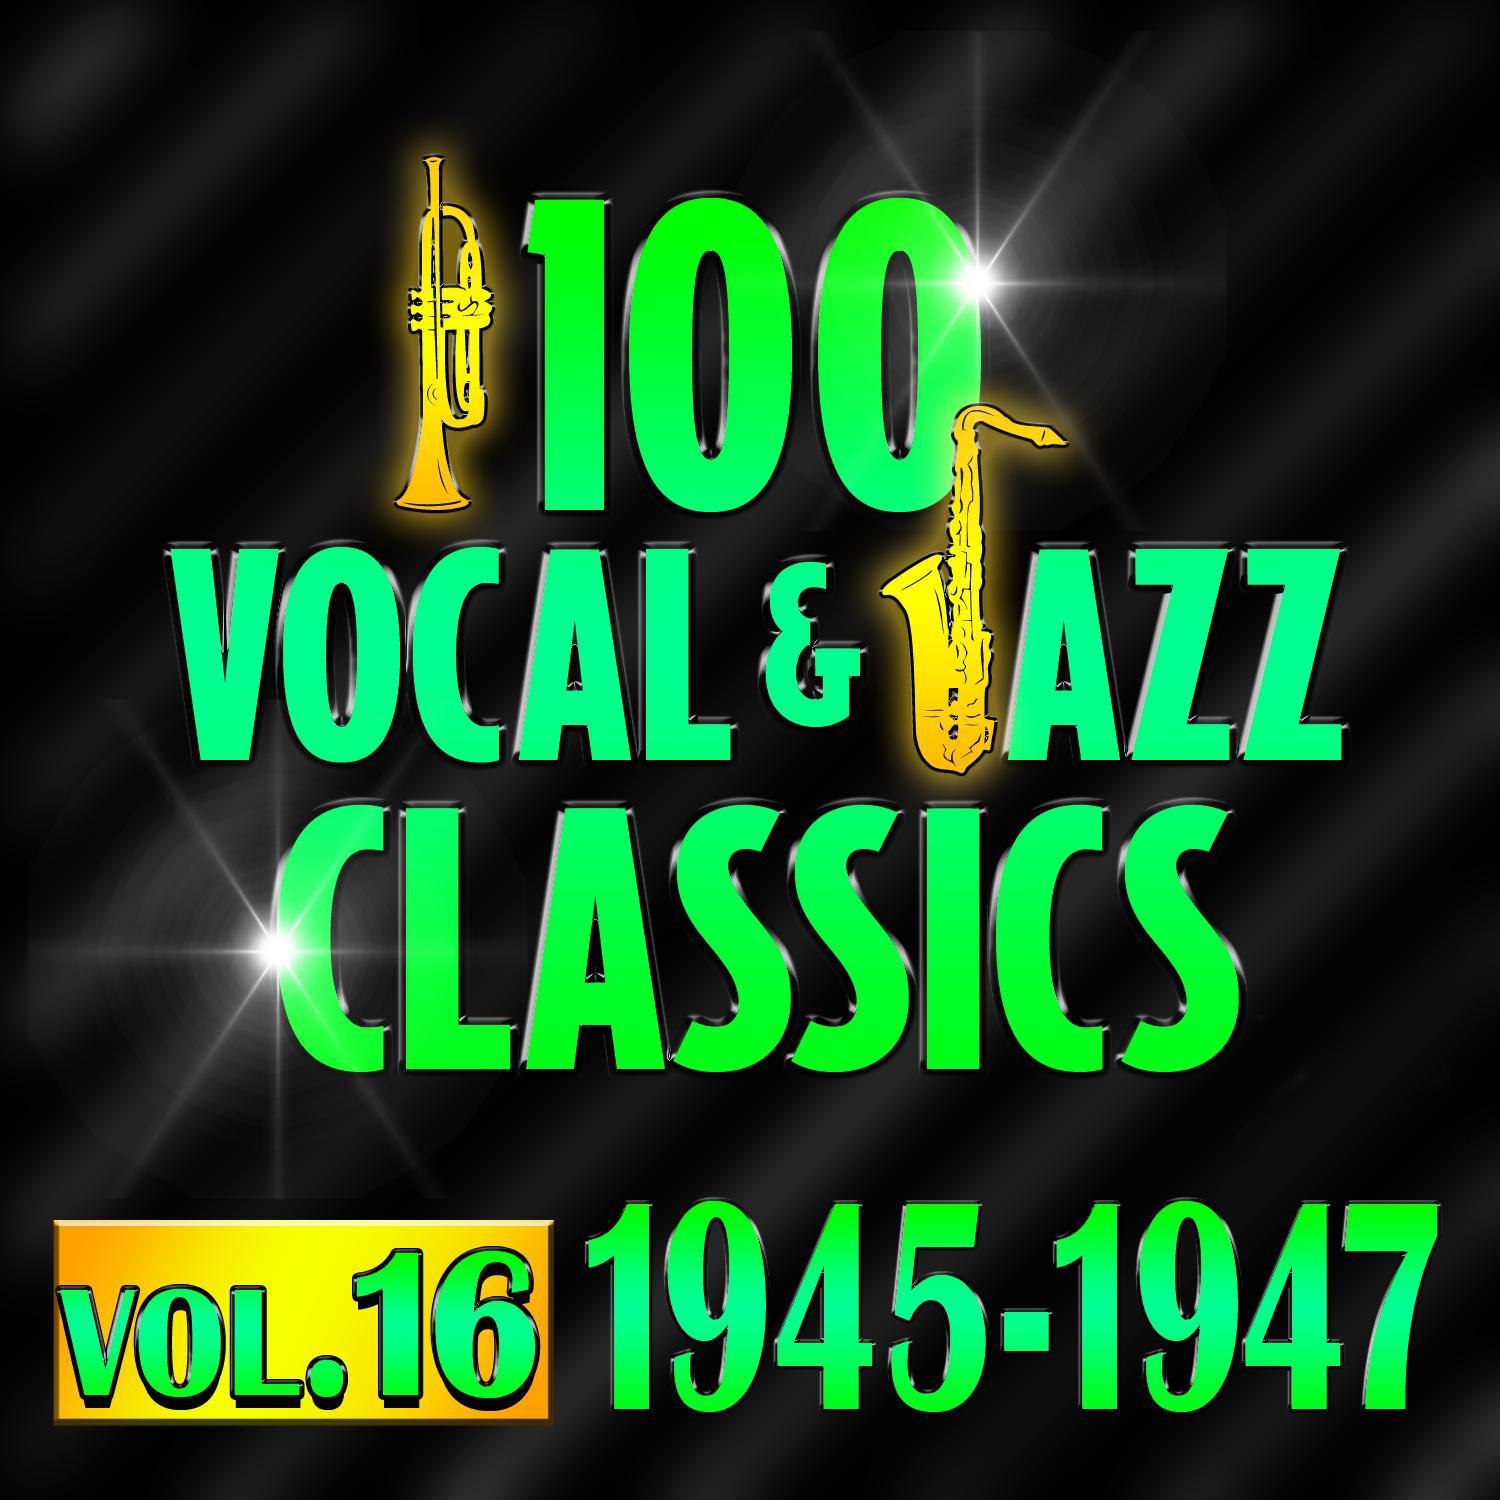 100 Vocal & Jazz Classics - Vol. 16 (1945-1947)